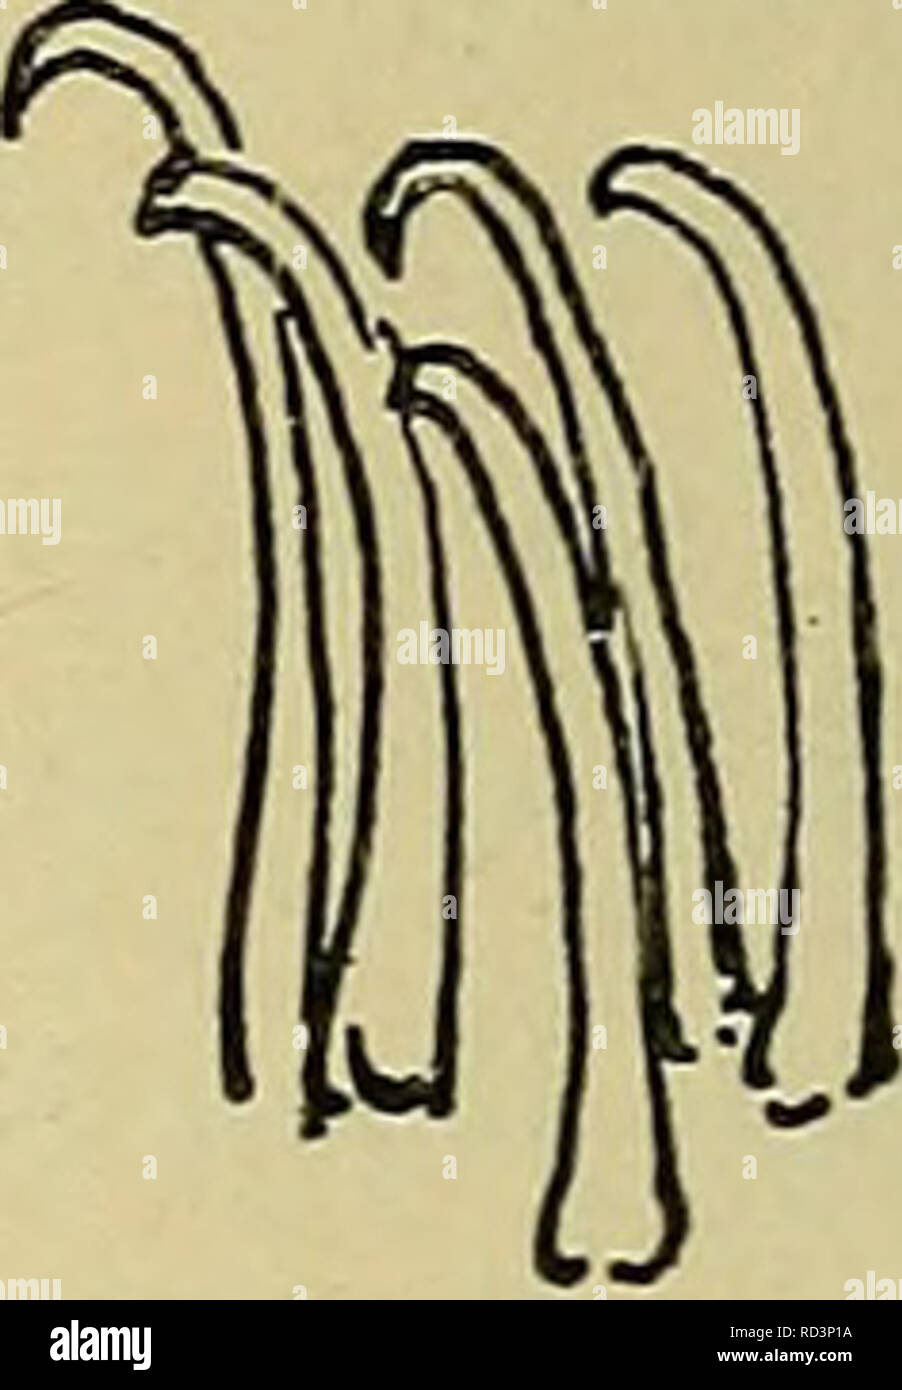 . Danmarks fauna; illustrerede haandbøger over den danske dyreverden... . Pig. 26. Kroge fra Gangvorterne af A Enochrus bicolor, B E. testa- ceus, C E. sp. er besat med talrige, krumme og spidse Smaakroge. 8. Bagkropsled med et trapezformet Skjold, der bagtil har 4 afrundede Tunger. Benene er lange, Kloleddet med en børstebærende Hæl. Larverne kravler rundt paa Vegetationen, især Alger, i stillestaaende Ferskvand, evtl. Brakvand; under Bevægel- sen benytter de Gangvorterne paa samme Maade som en Sommerfuglelarve. Æggene er, i et Antal af 12—20, omgivne inderst af løst Spind og yderst af en fas Stock Photo